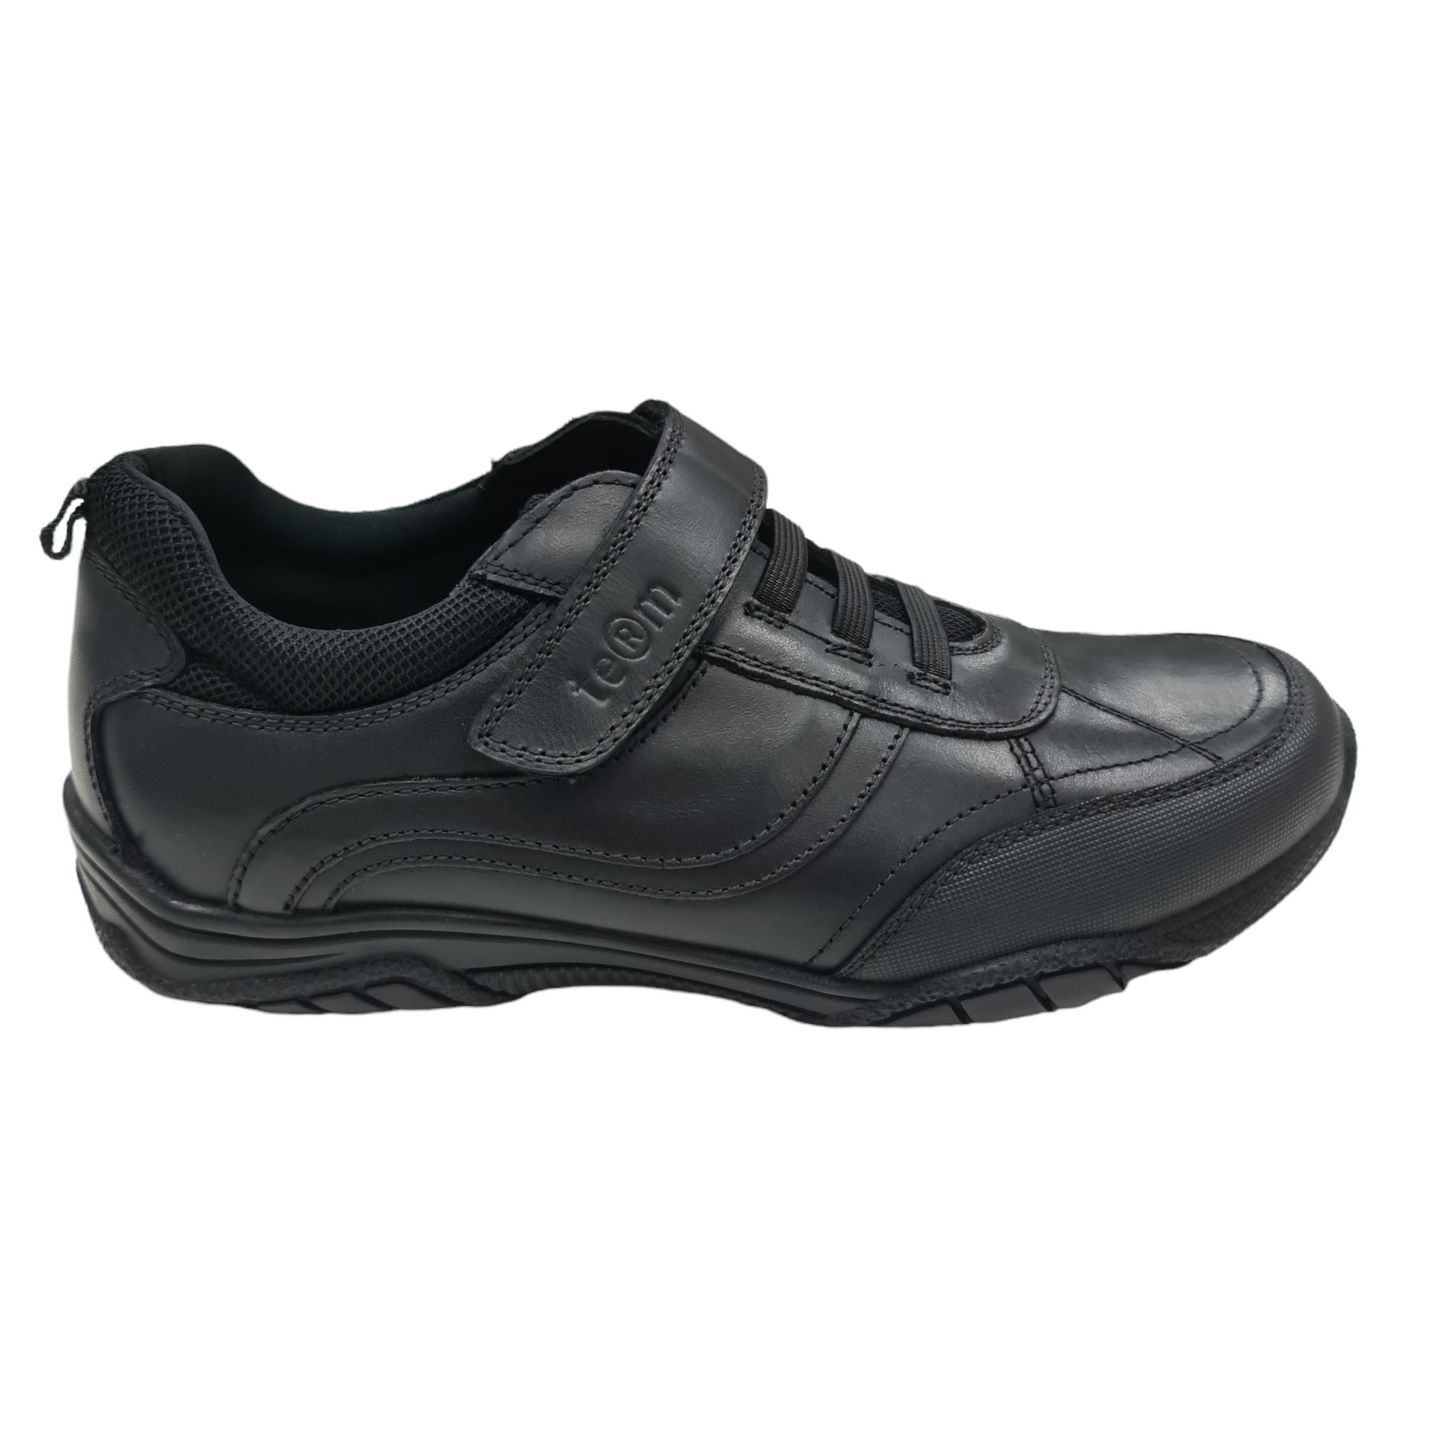 Term Maxx Black Footwear